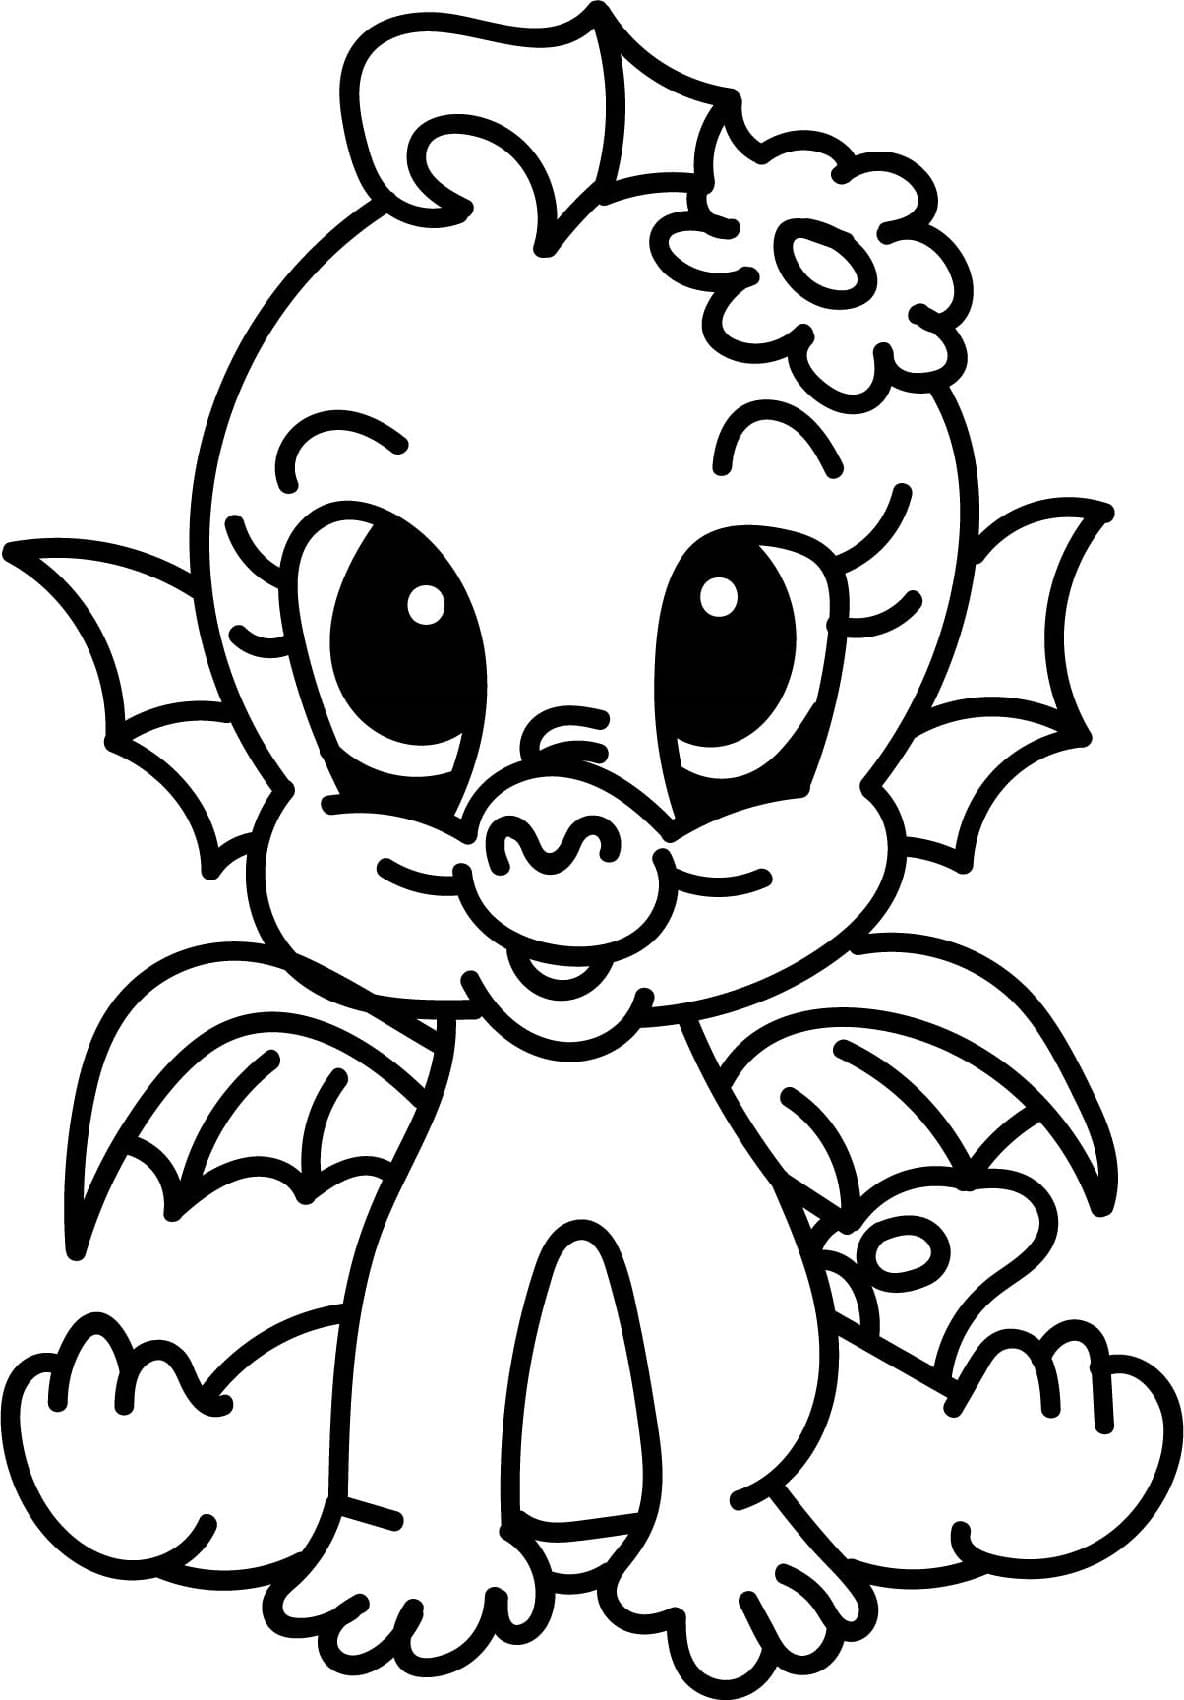 Dibujos de Bebé Dragón para Colorear